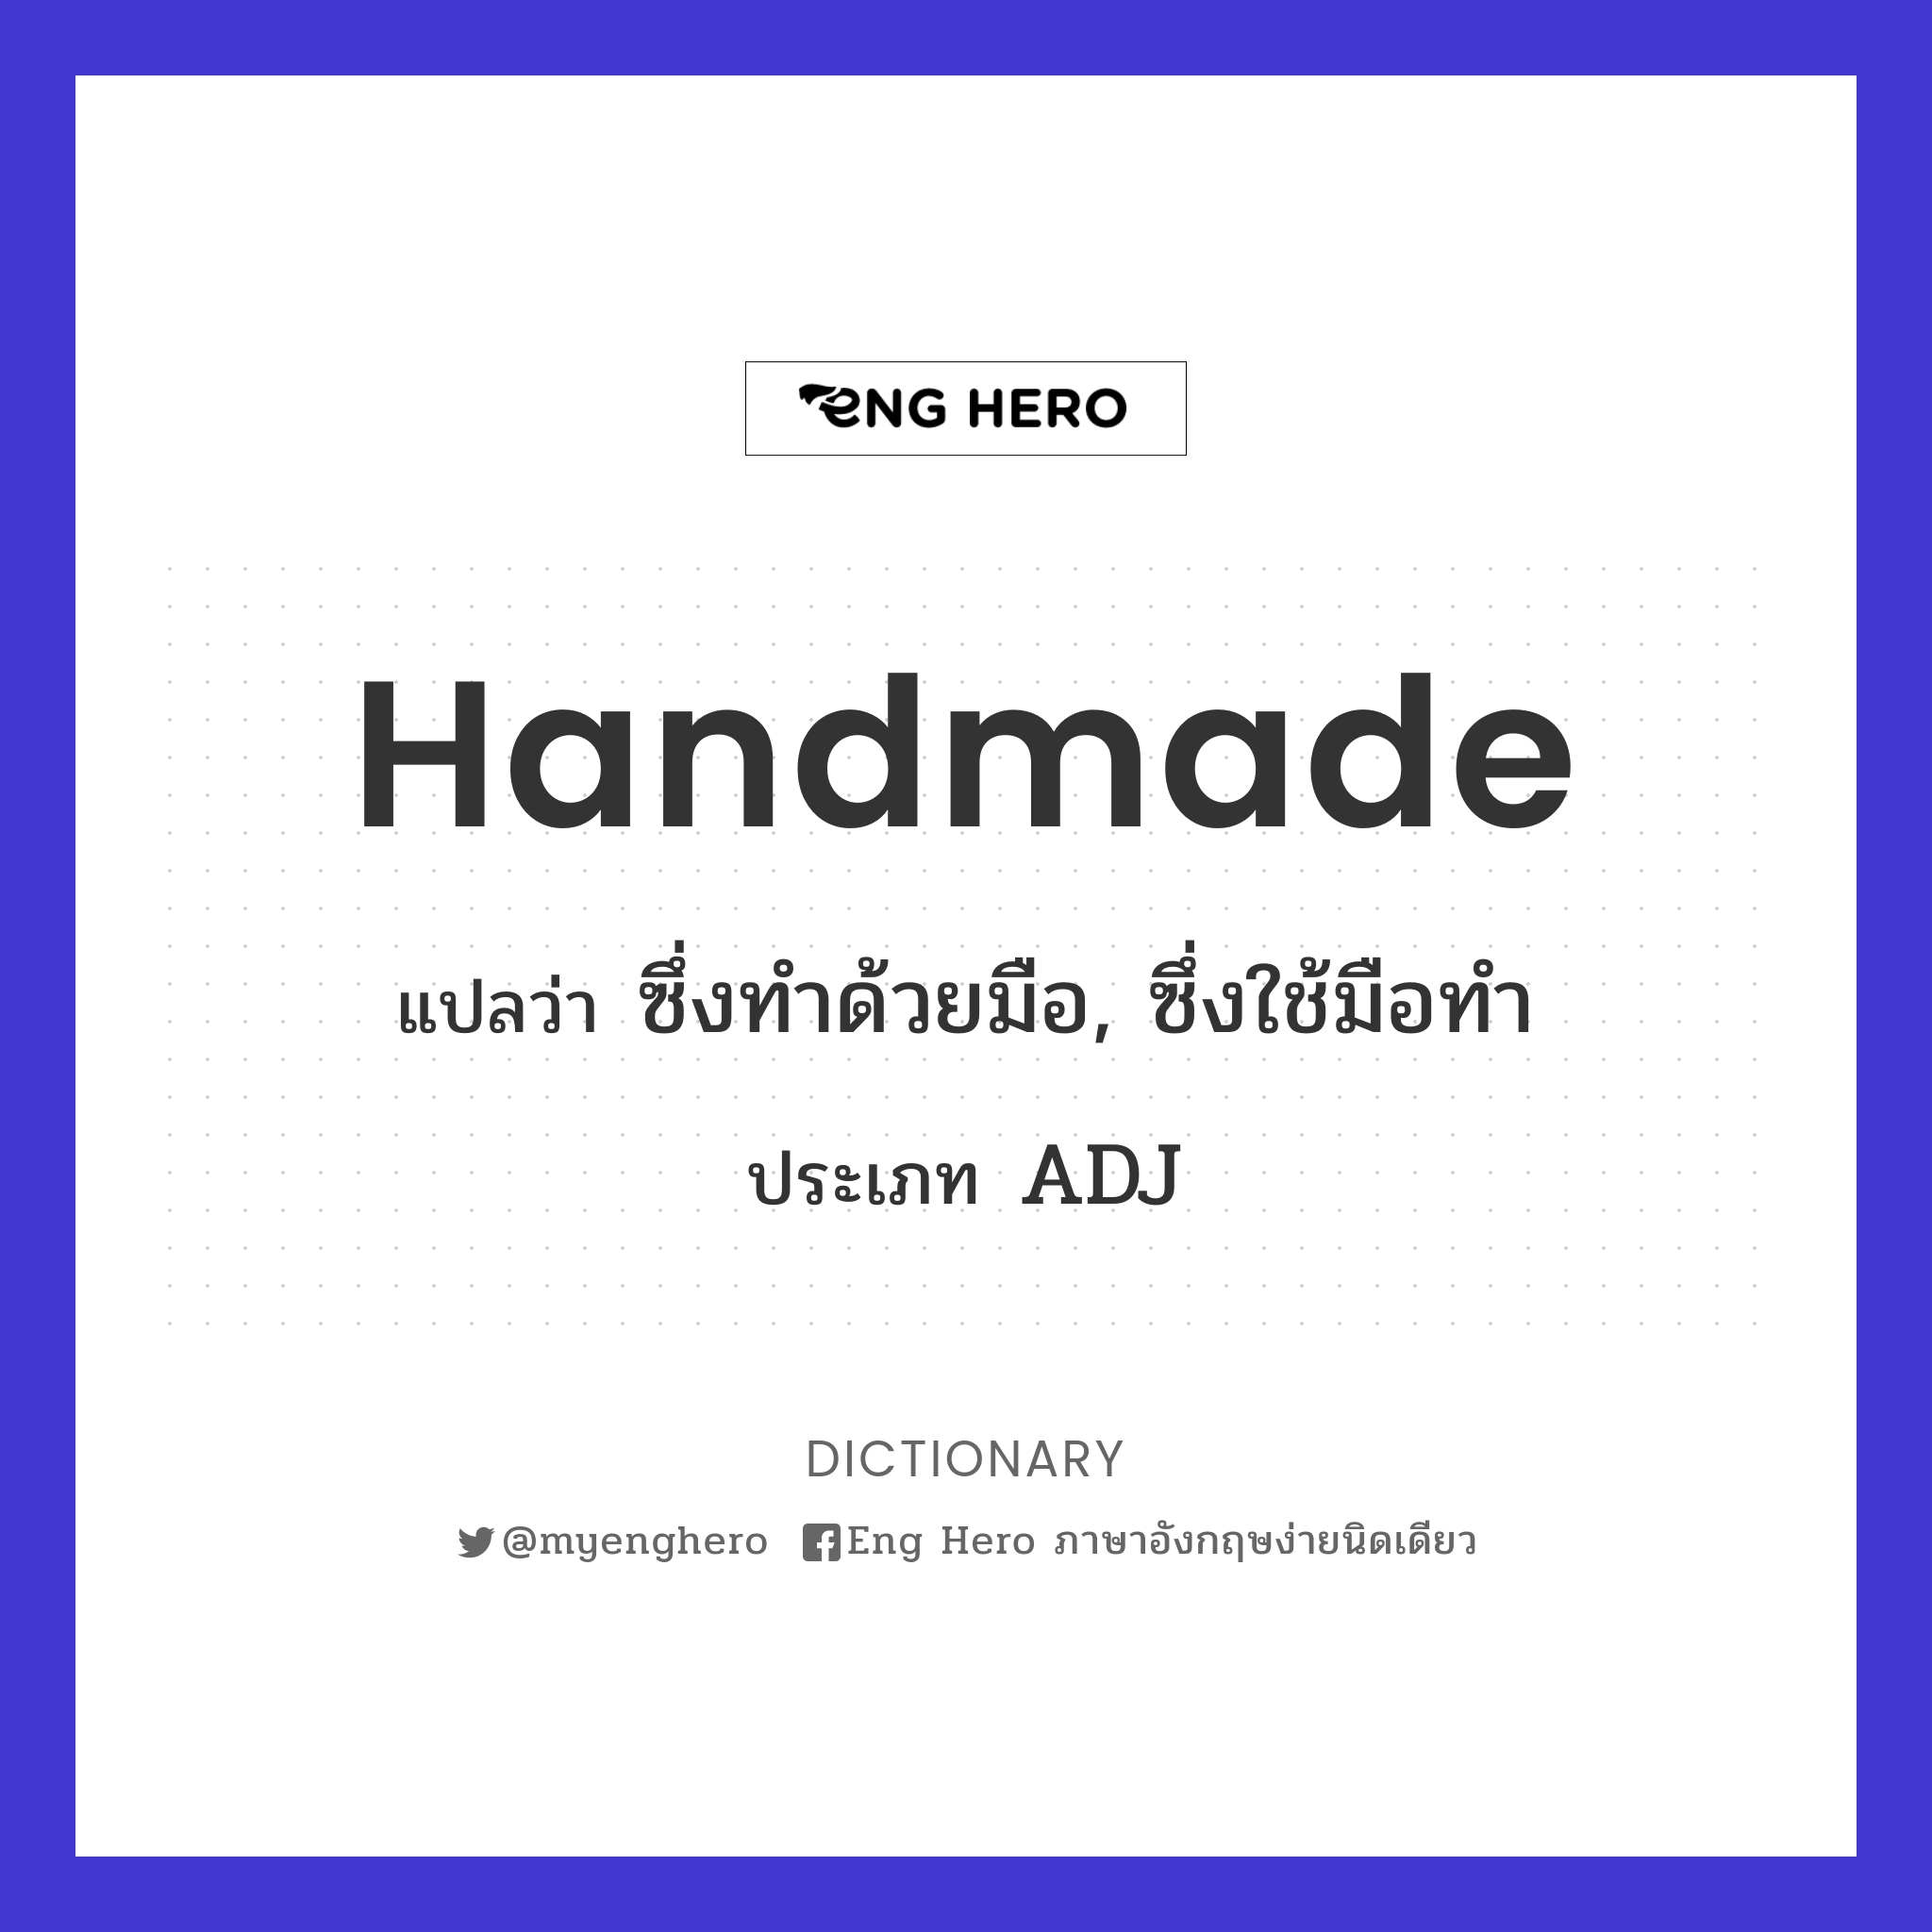 Handmade แปลว่า ซึ่งทำด้วยมือ, ซึ่งใช้มือทำ | Eng Hero เรียนภาษาอังกฤษ  ออนไลน์ ฟรี